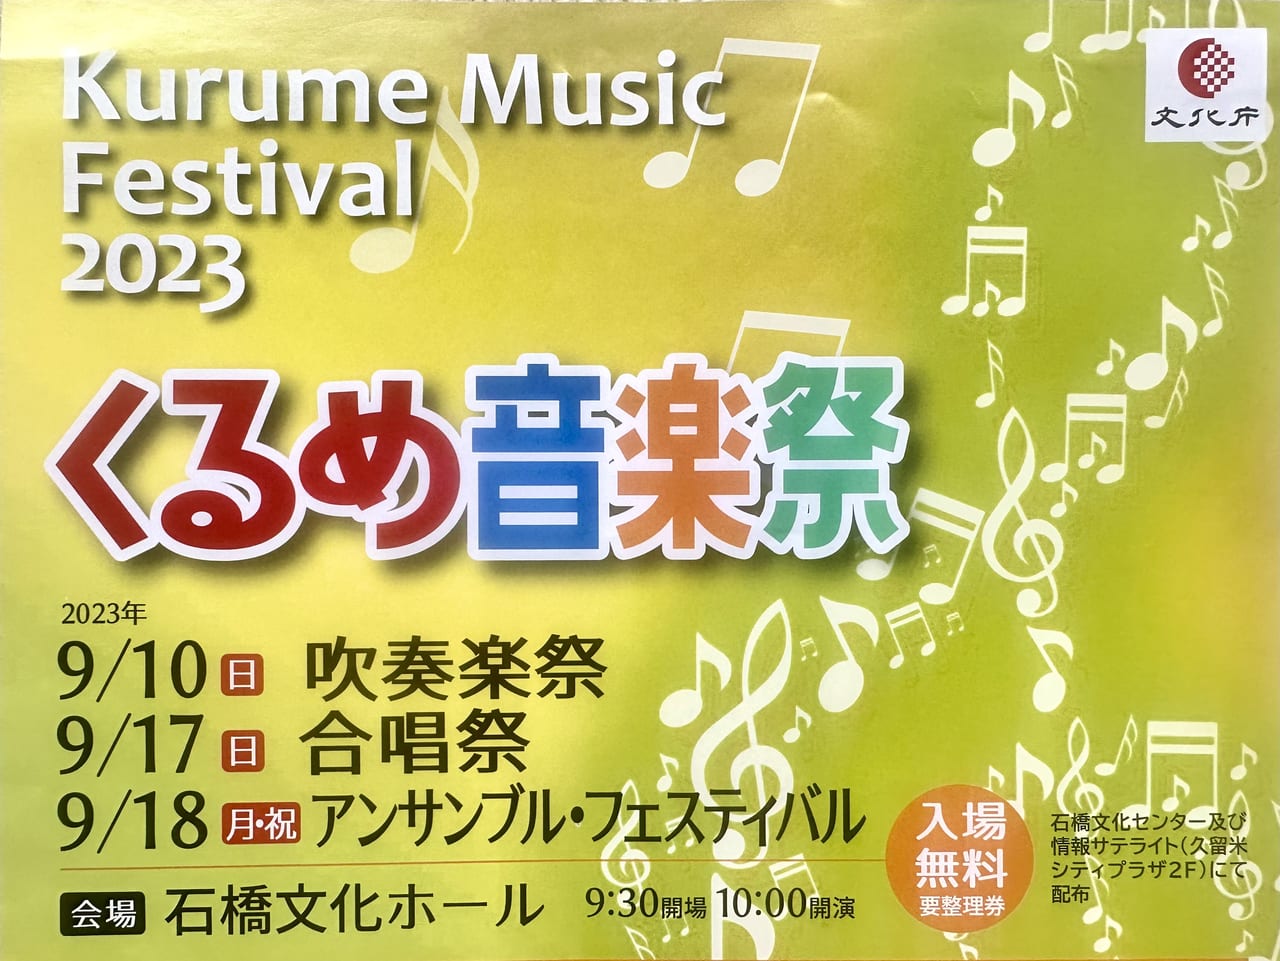 2023年Kurume Music Festival2023 くるめ音楽祭